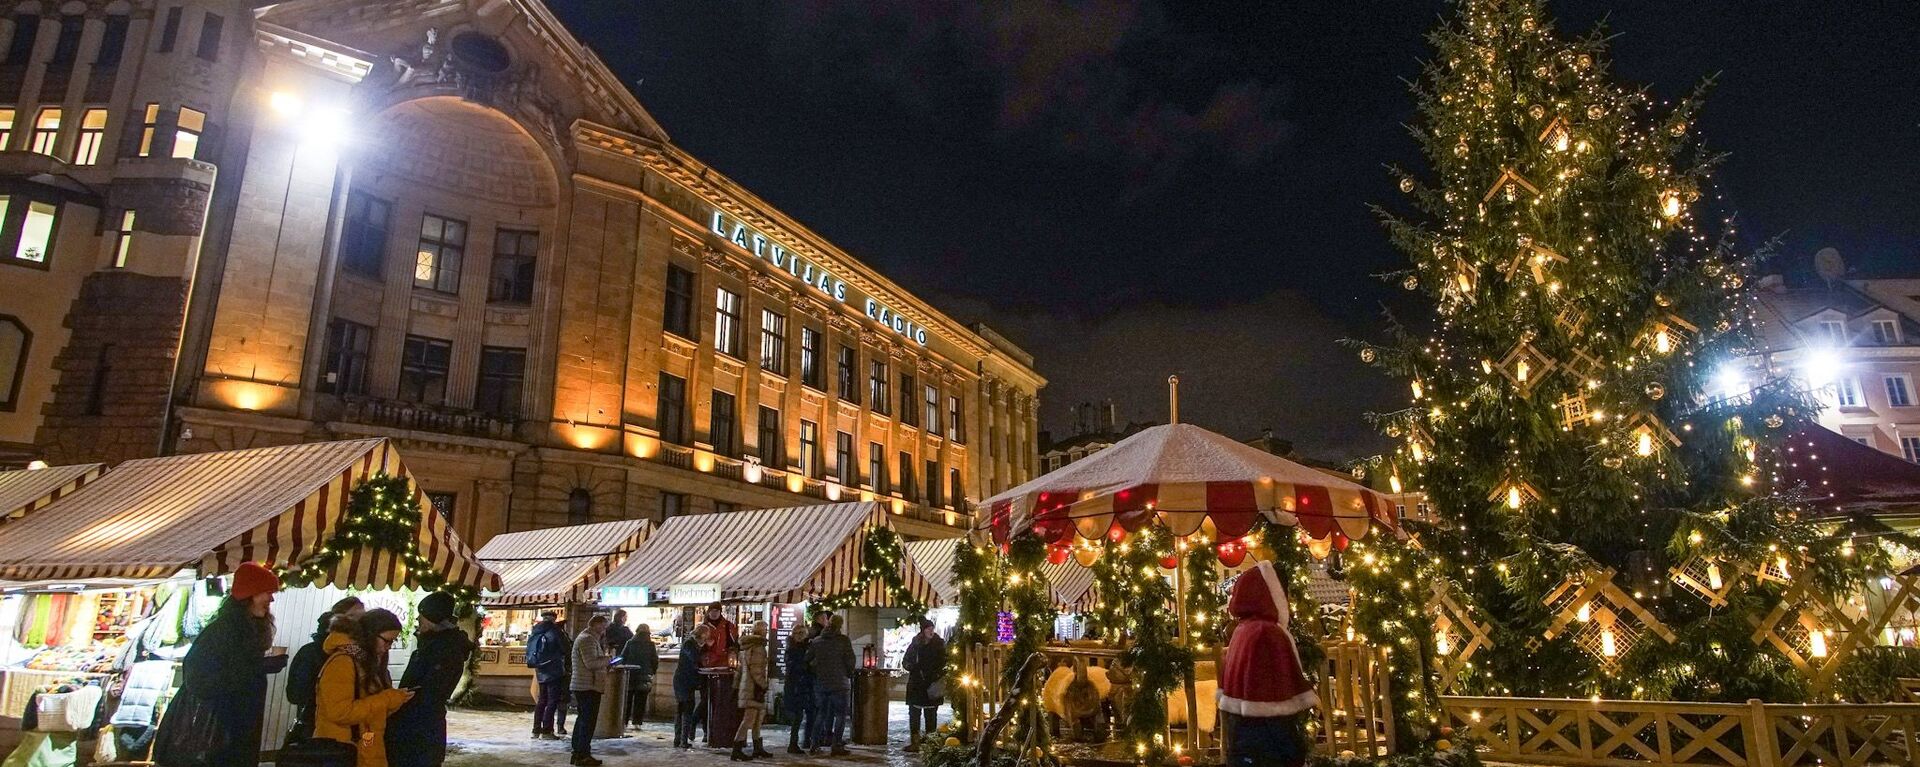 Рождественская ярмарка на Домской площади в Риге - Sputnik Латвия, 1920, 30.11.2021